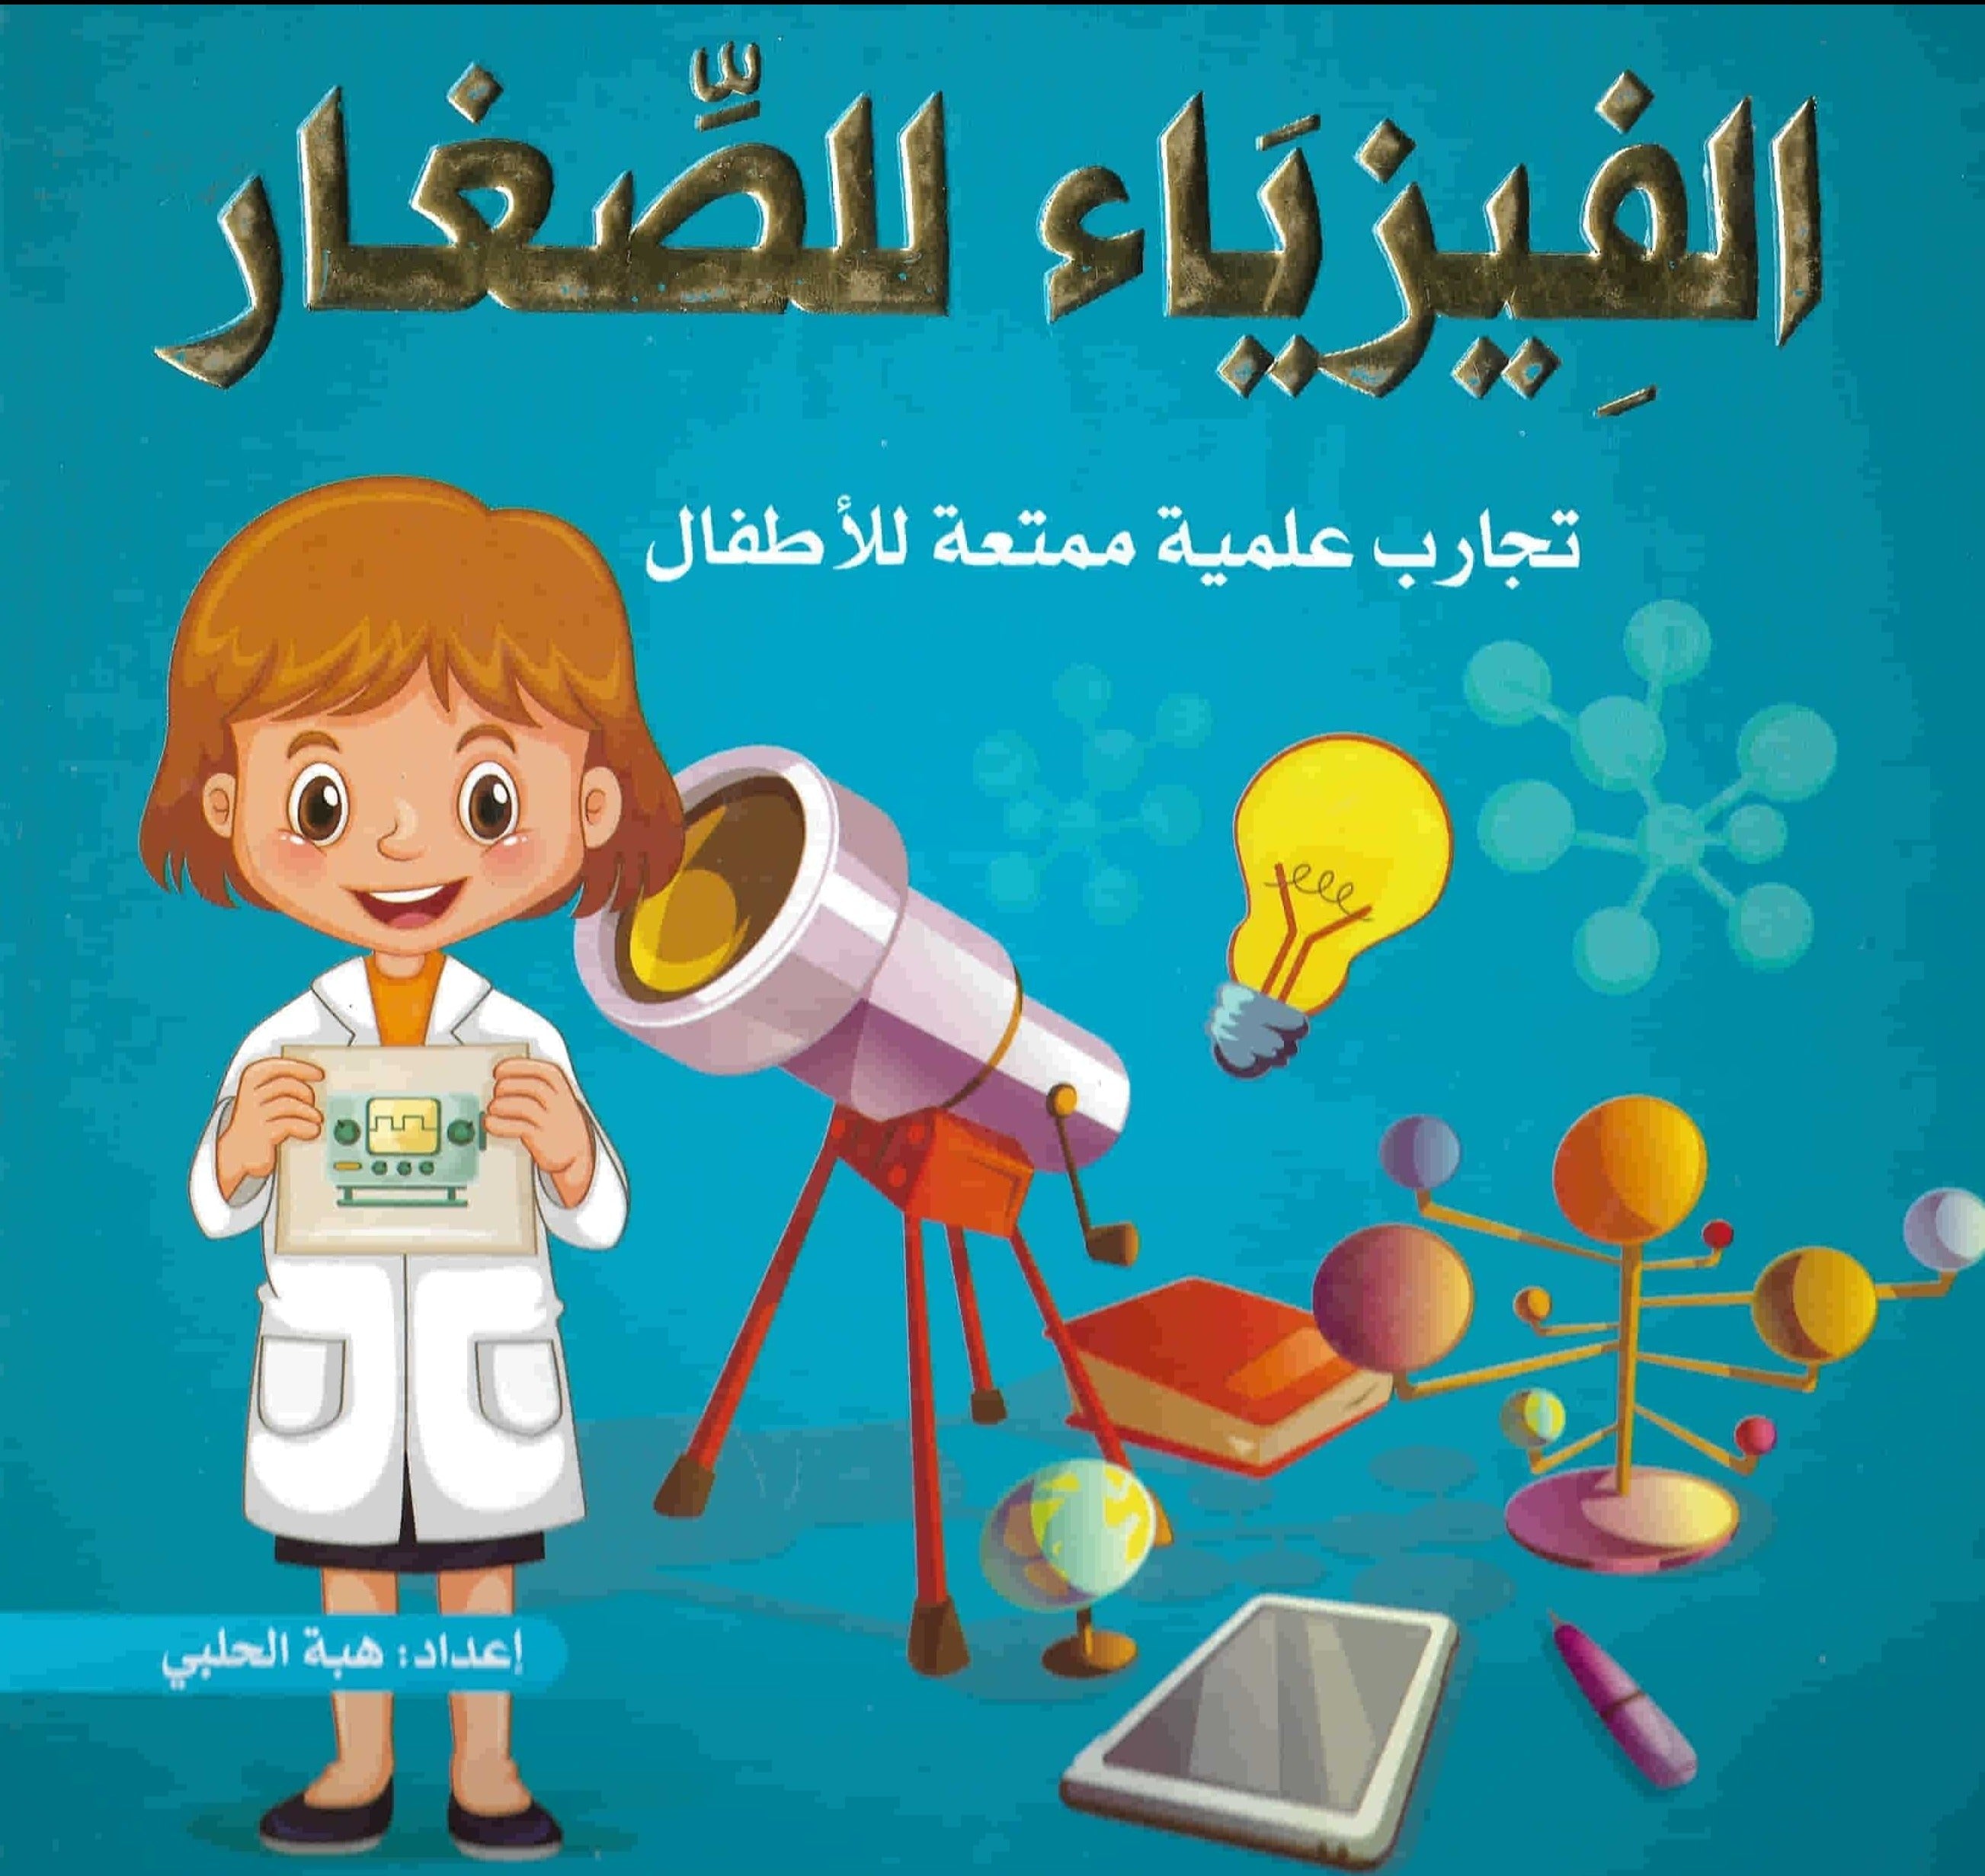 الفيزياء للصغار : تجارب علمية ممتعة للأطفال كتب أطفال هبة الحلبي